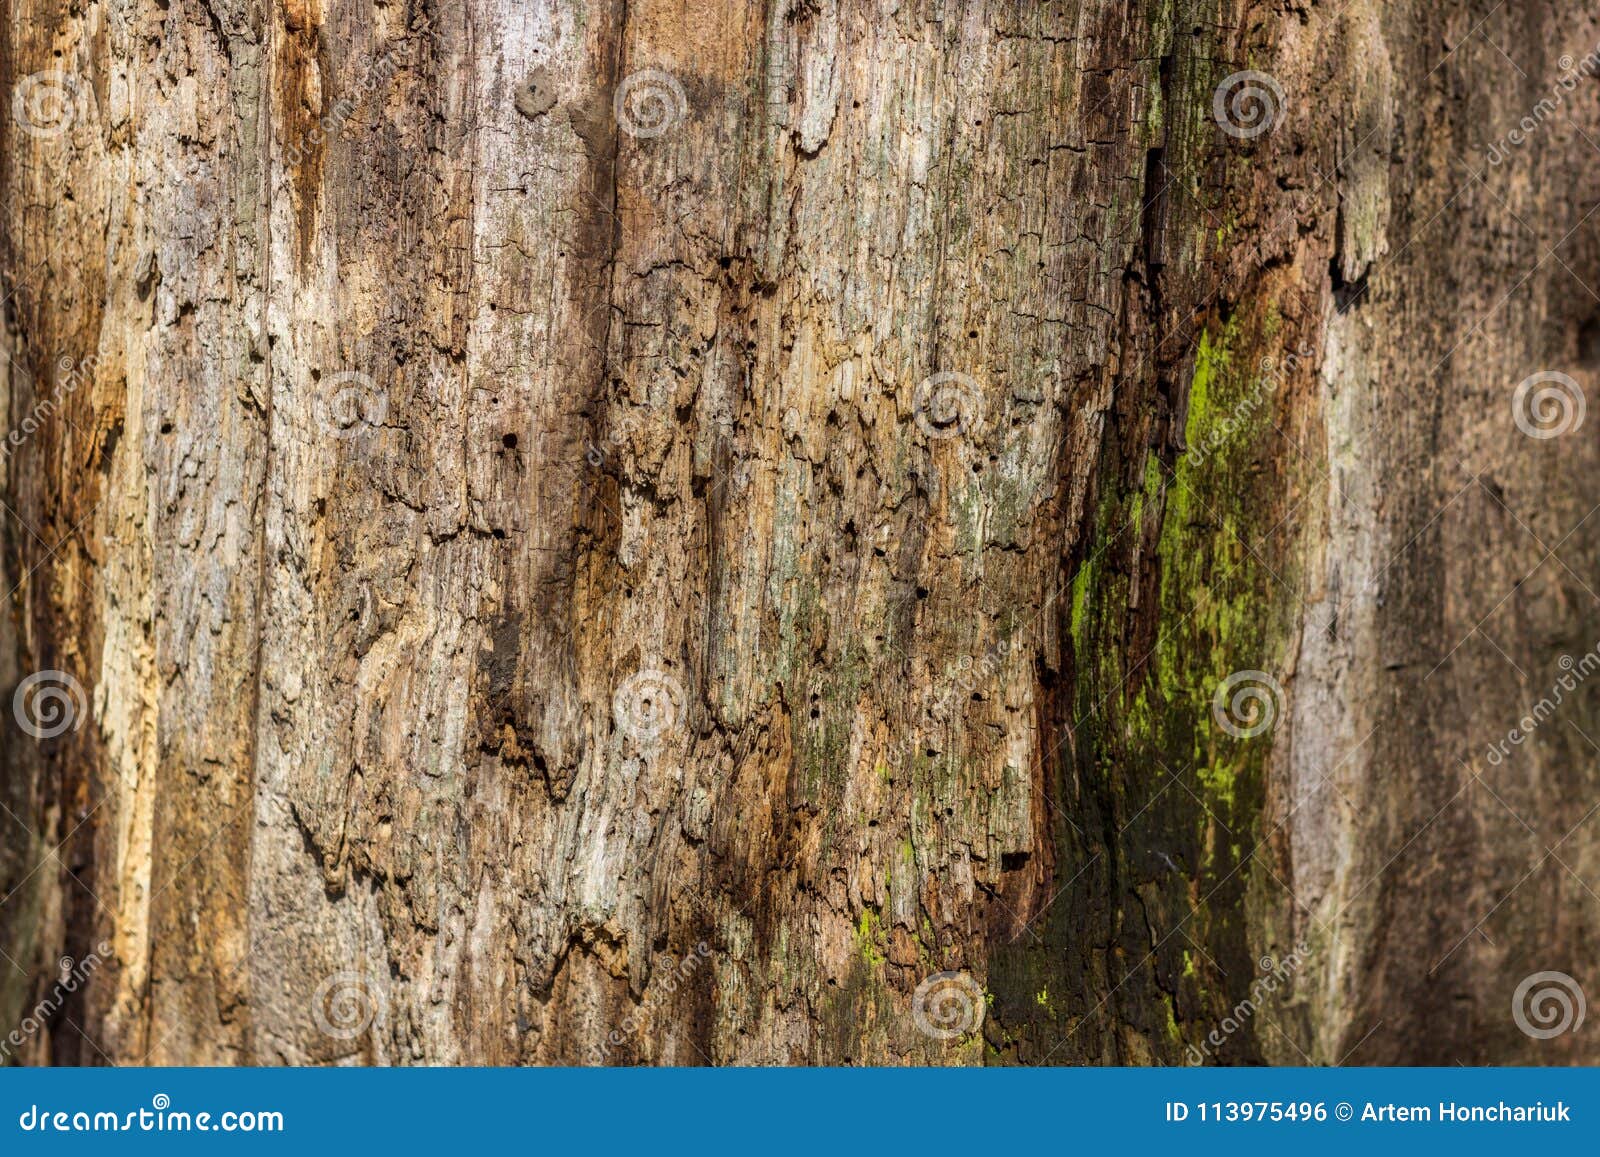 Естественная предпосылка тухлой древесины на очень старых пнях дерева Текстура старых пней Старый пень покрытый с лишайниками